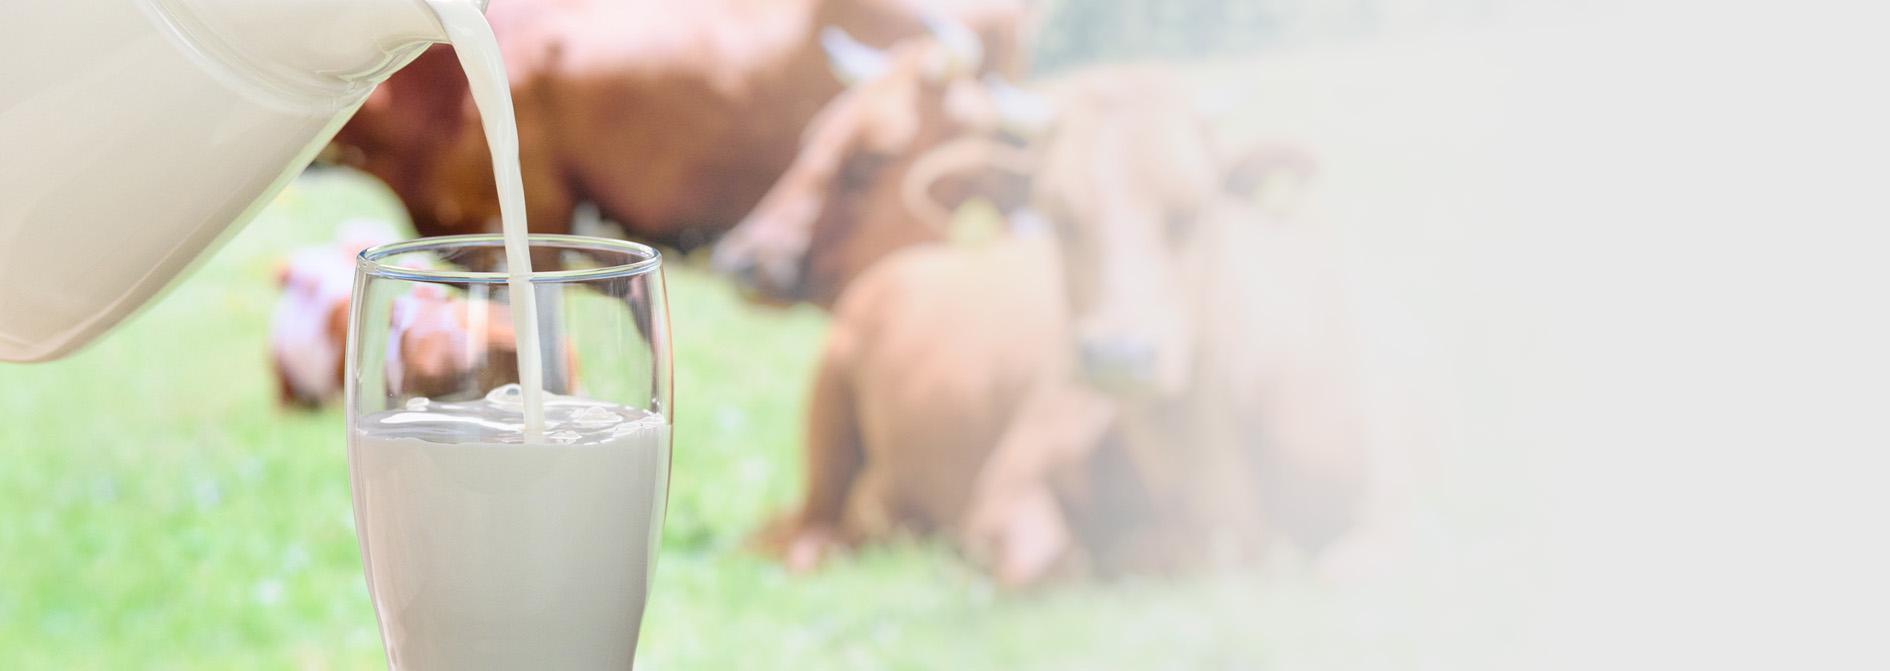 Slajd #3 - wlewanie mleka do szklanki